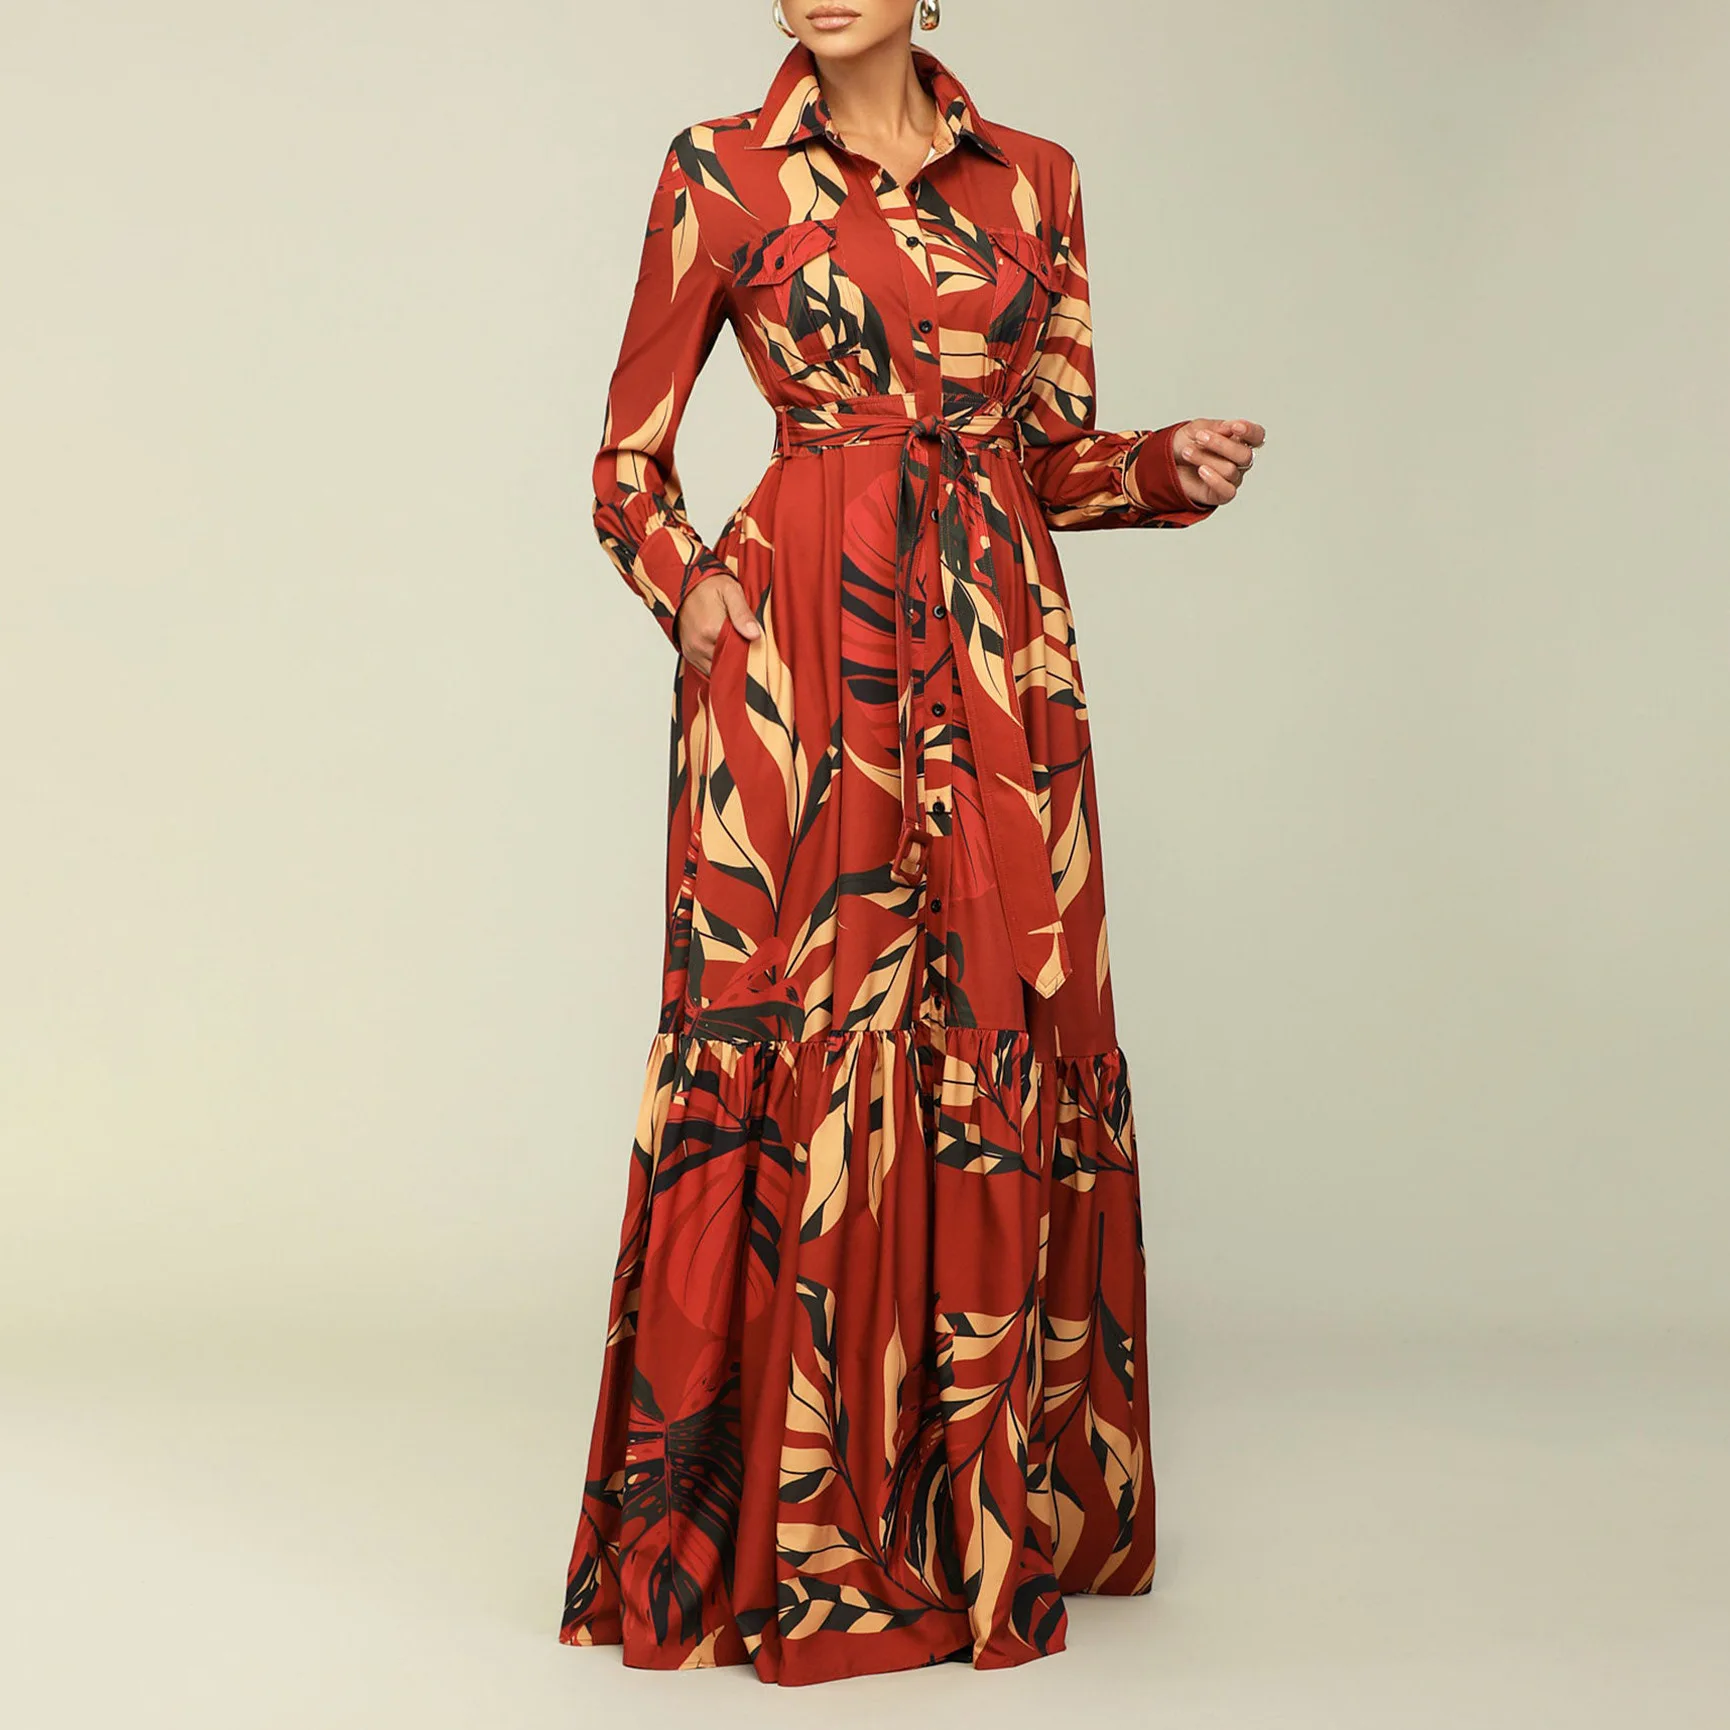 Wholesale Latest Design Fashion Autumn Dresses Women Casual Lapel Strap ...